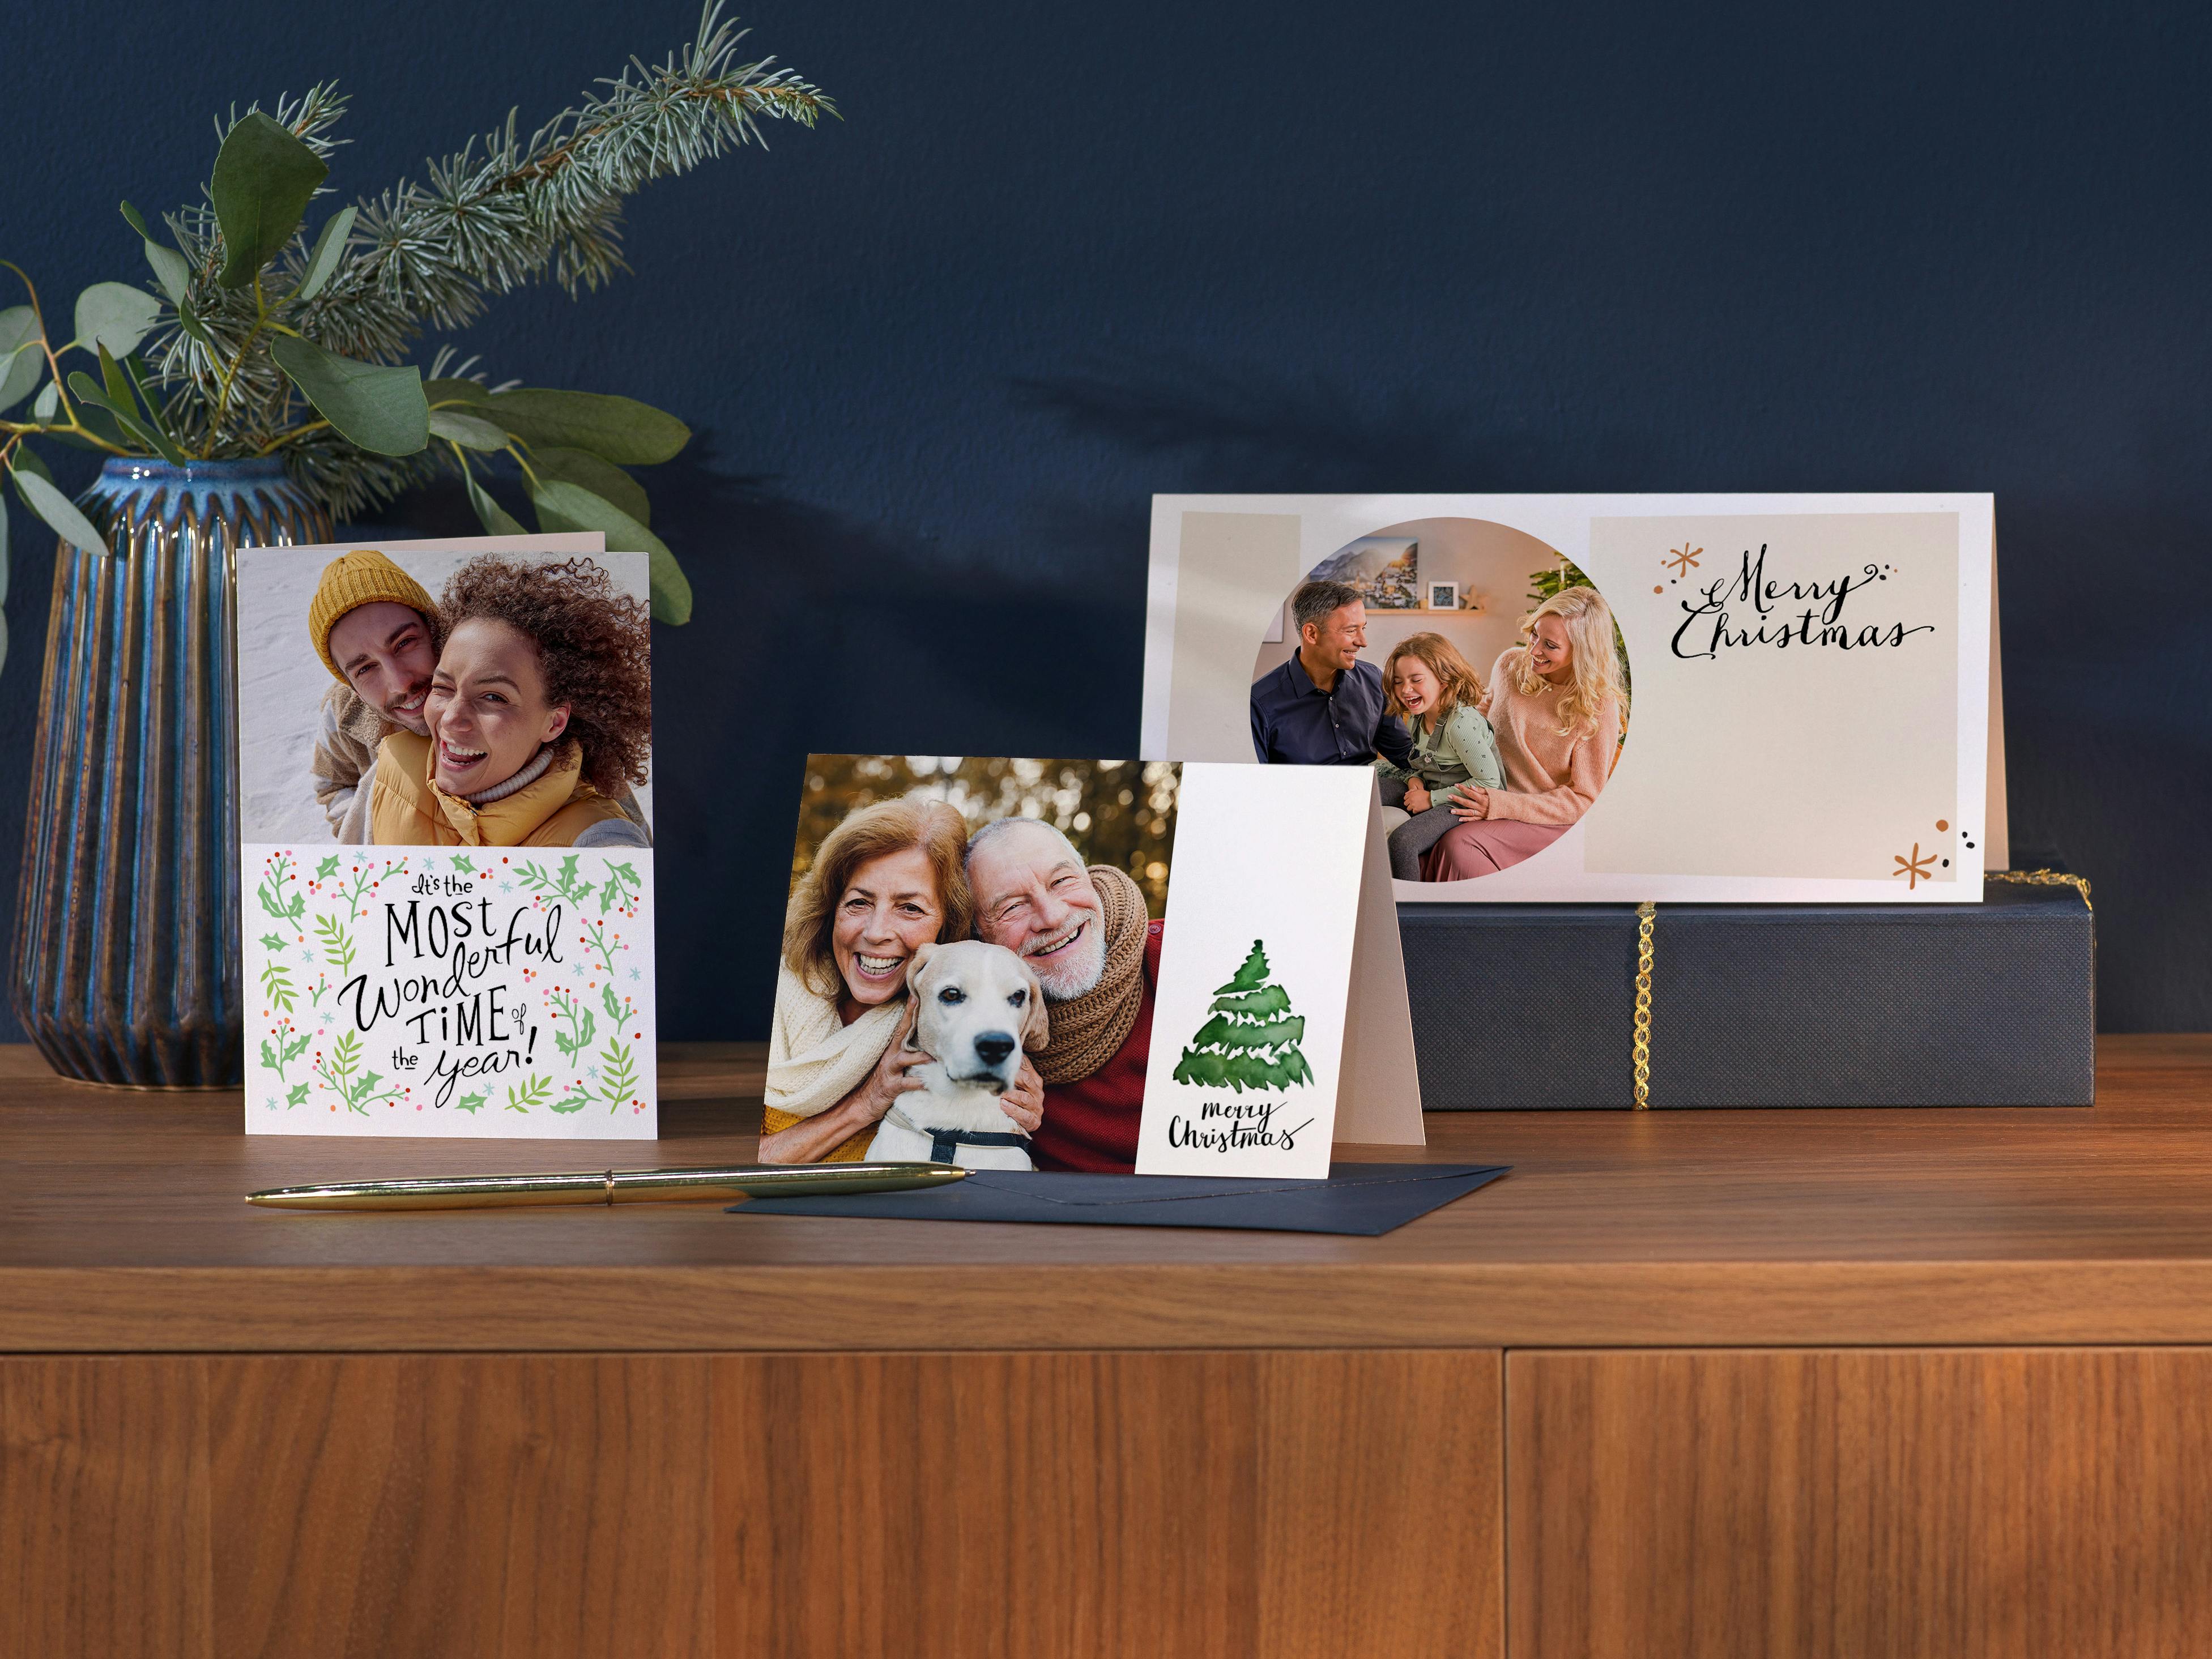 Drie kerstkaarten met familiefoto's en kerstdesigns